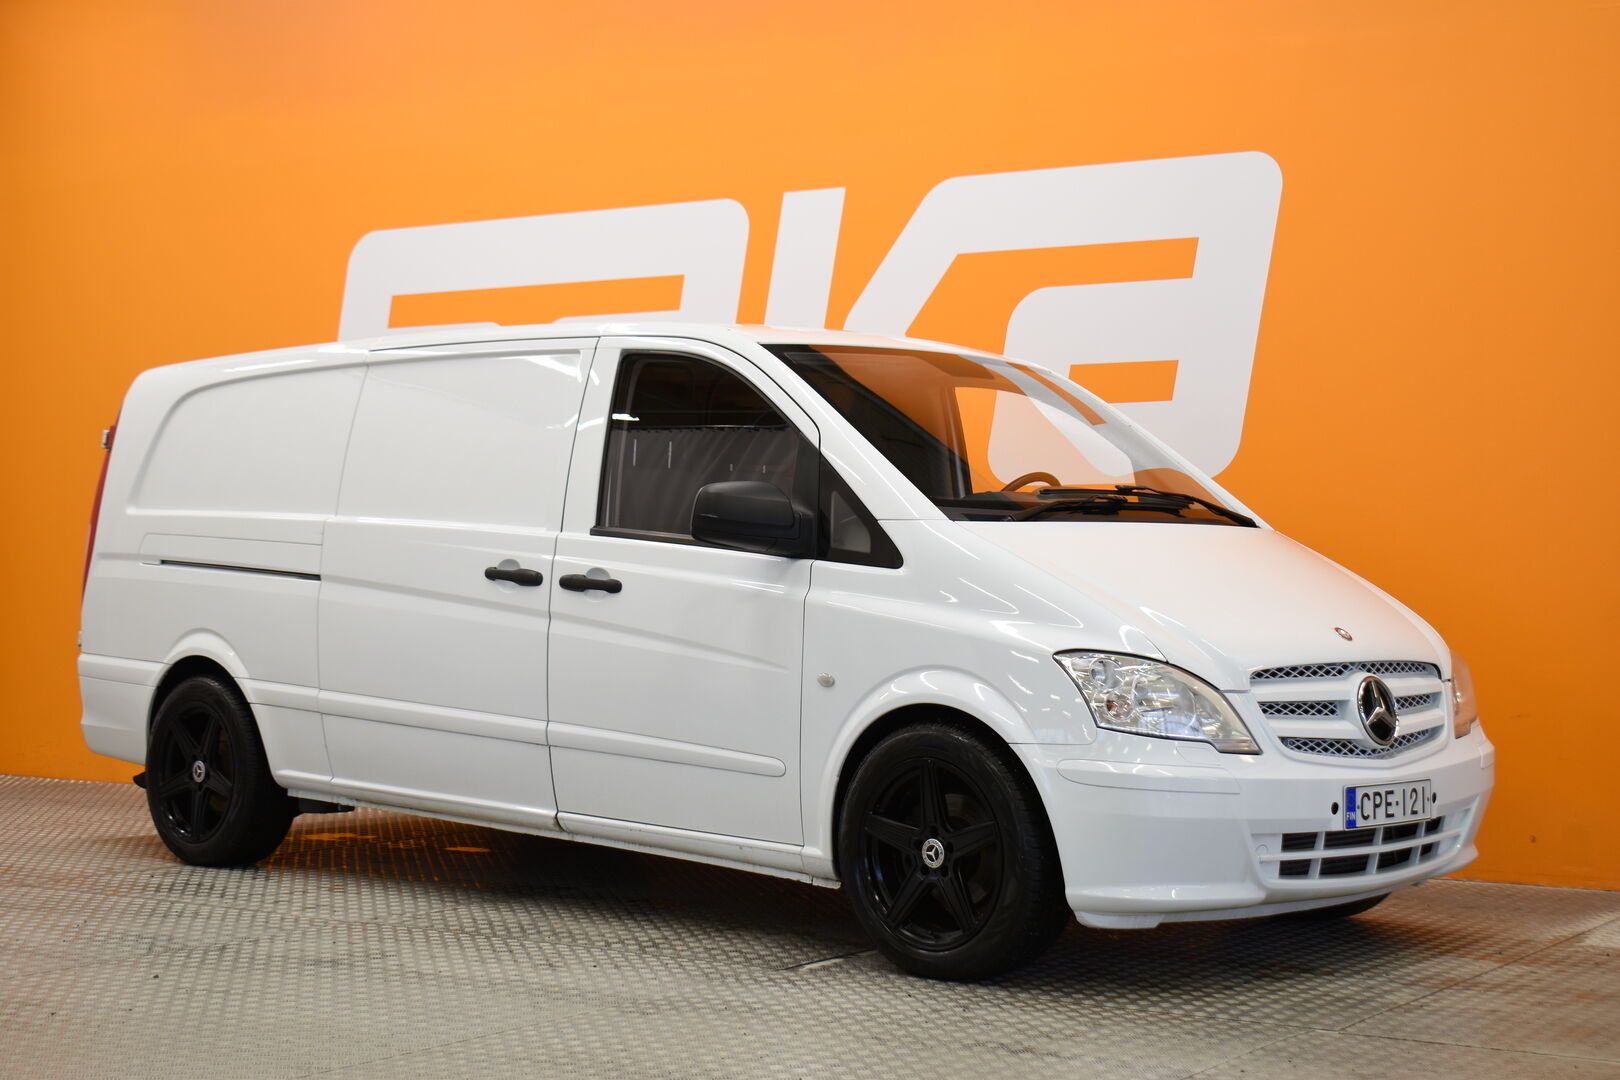 Valkoinen Tila-auto, Mercedes-Benz Vito – CPE-121